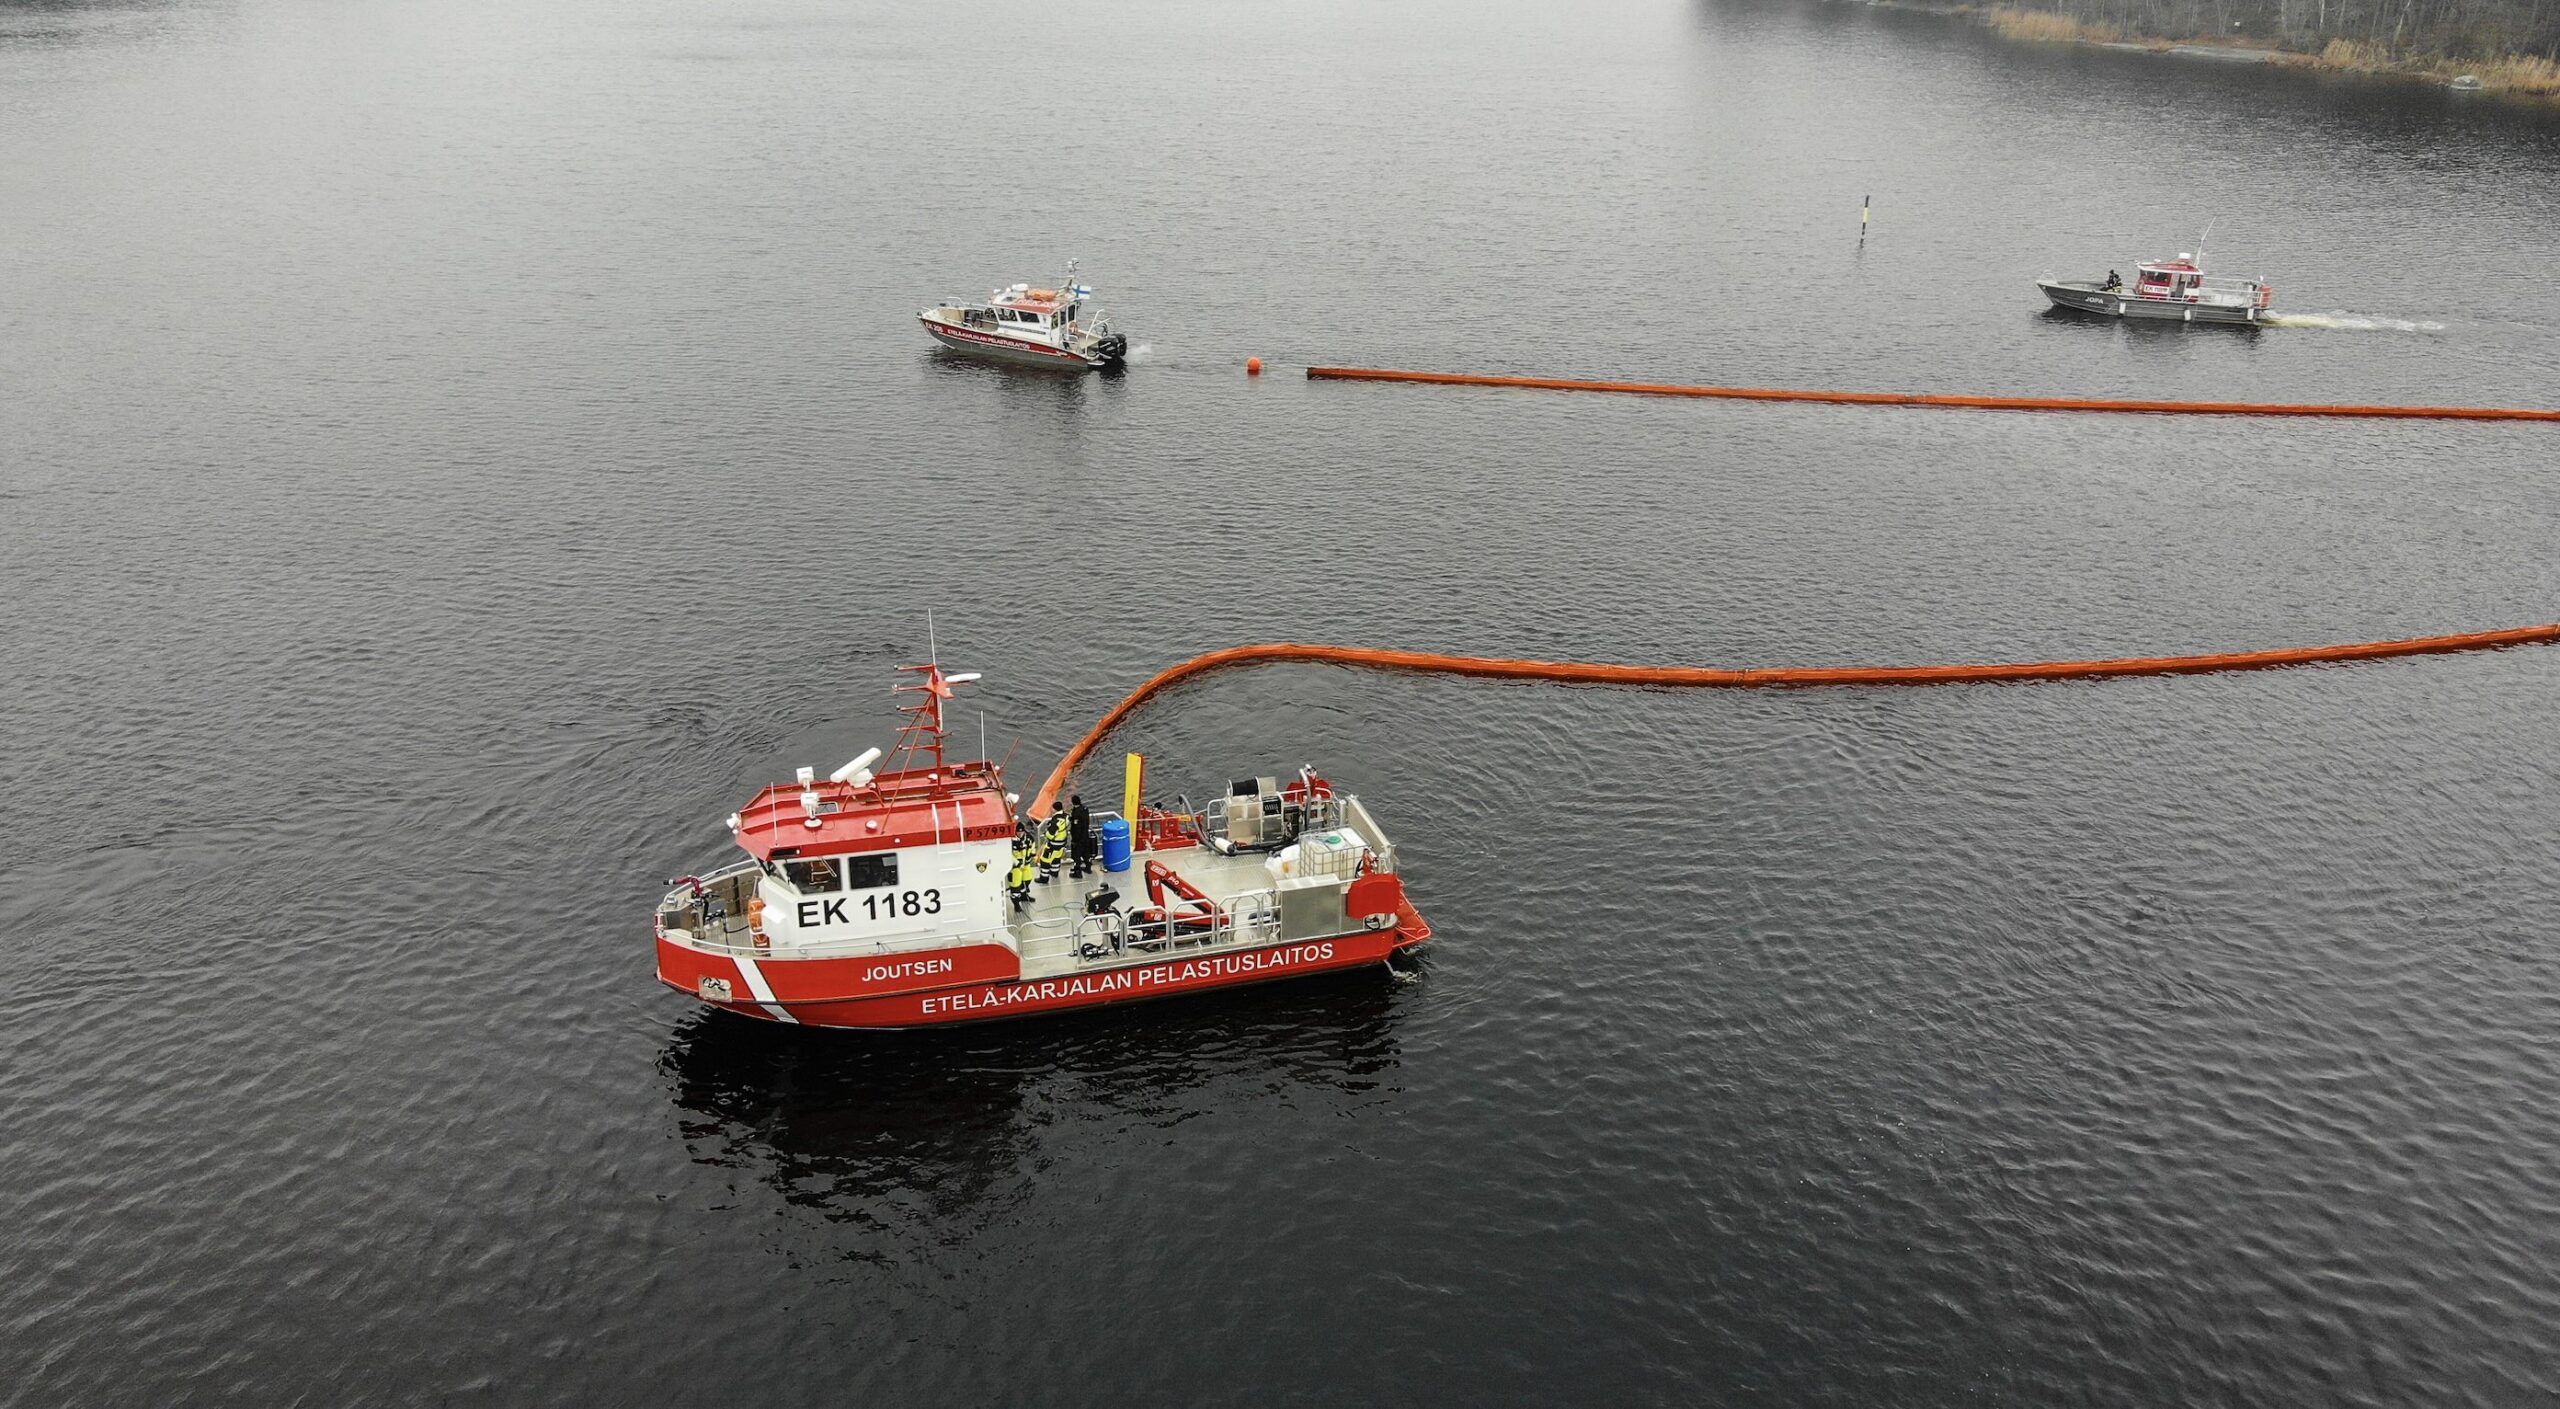 Etelä-Karjalan pelastuslaitoksen Joutsen-alus hälytettiin avuksi Suur-Saimaalla tapahtuneeseen vesiliikenneonnettomuuteen.